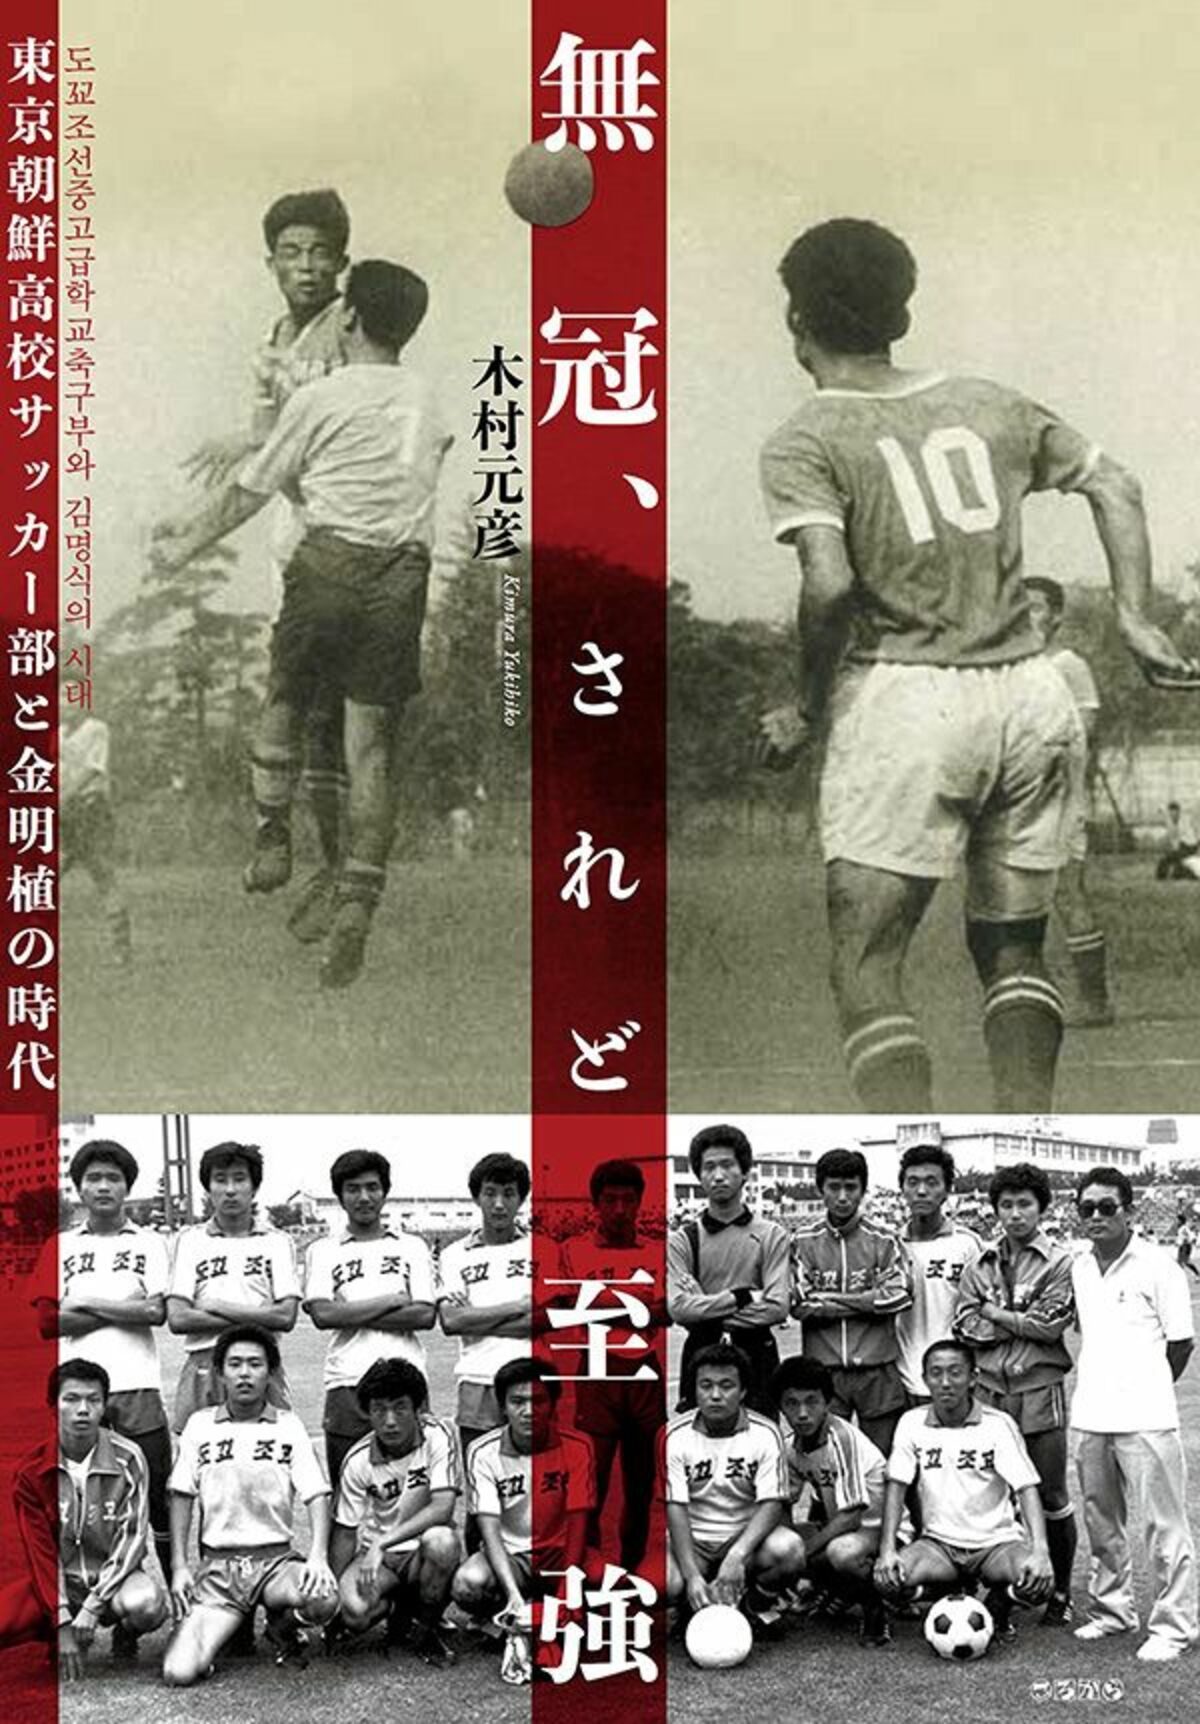 東京朝鮮高校サッカー部が 幻の日本一 と呼ばれた理由 文春オンライン